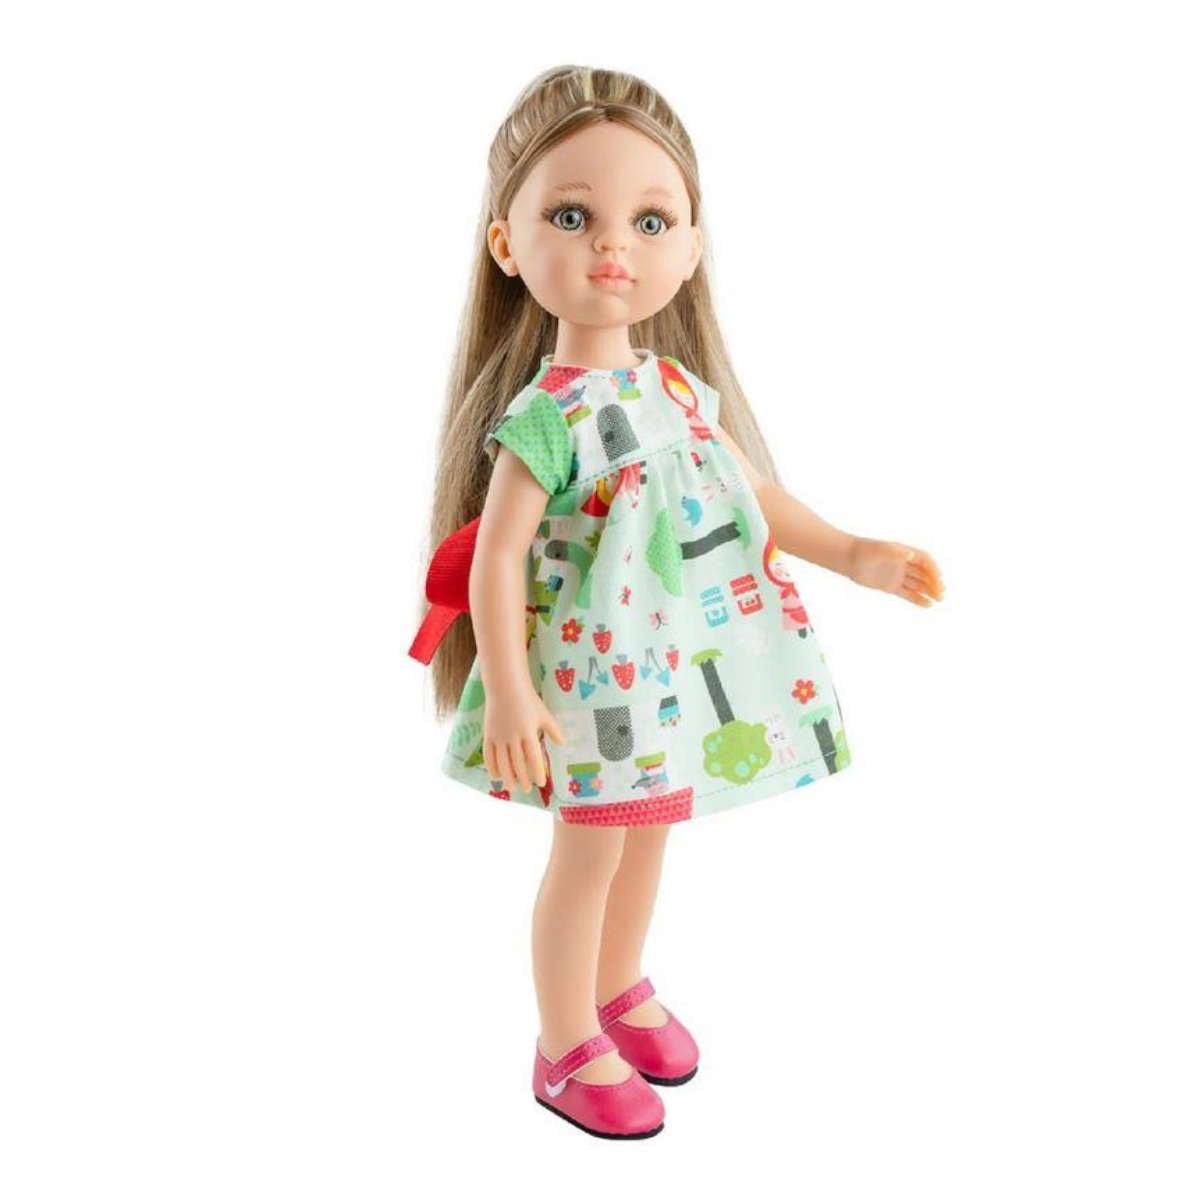 Lalka Paola Reina 04496 Elvi 32 cm, ręcznie wykonana w Hiszpanii, idealna jakość i bezpieczeństwo dla dzieci.